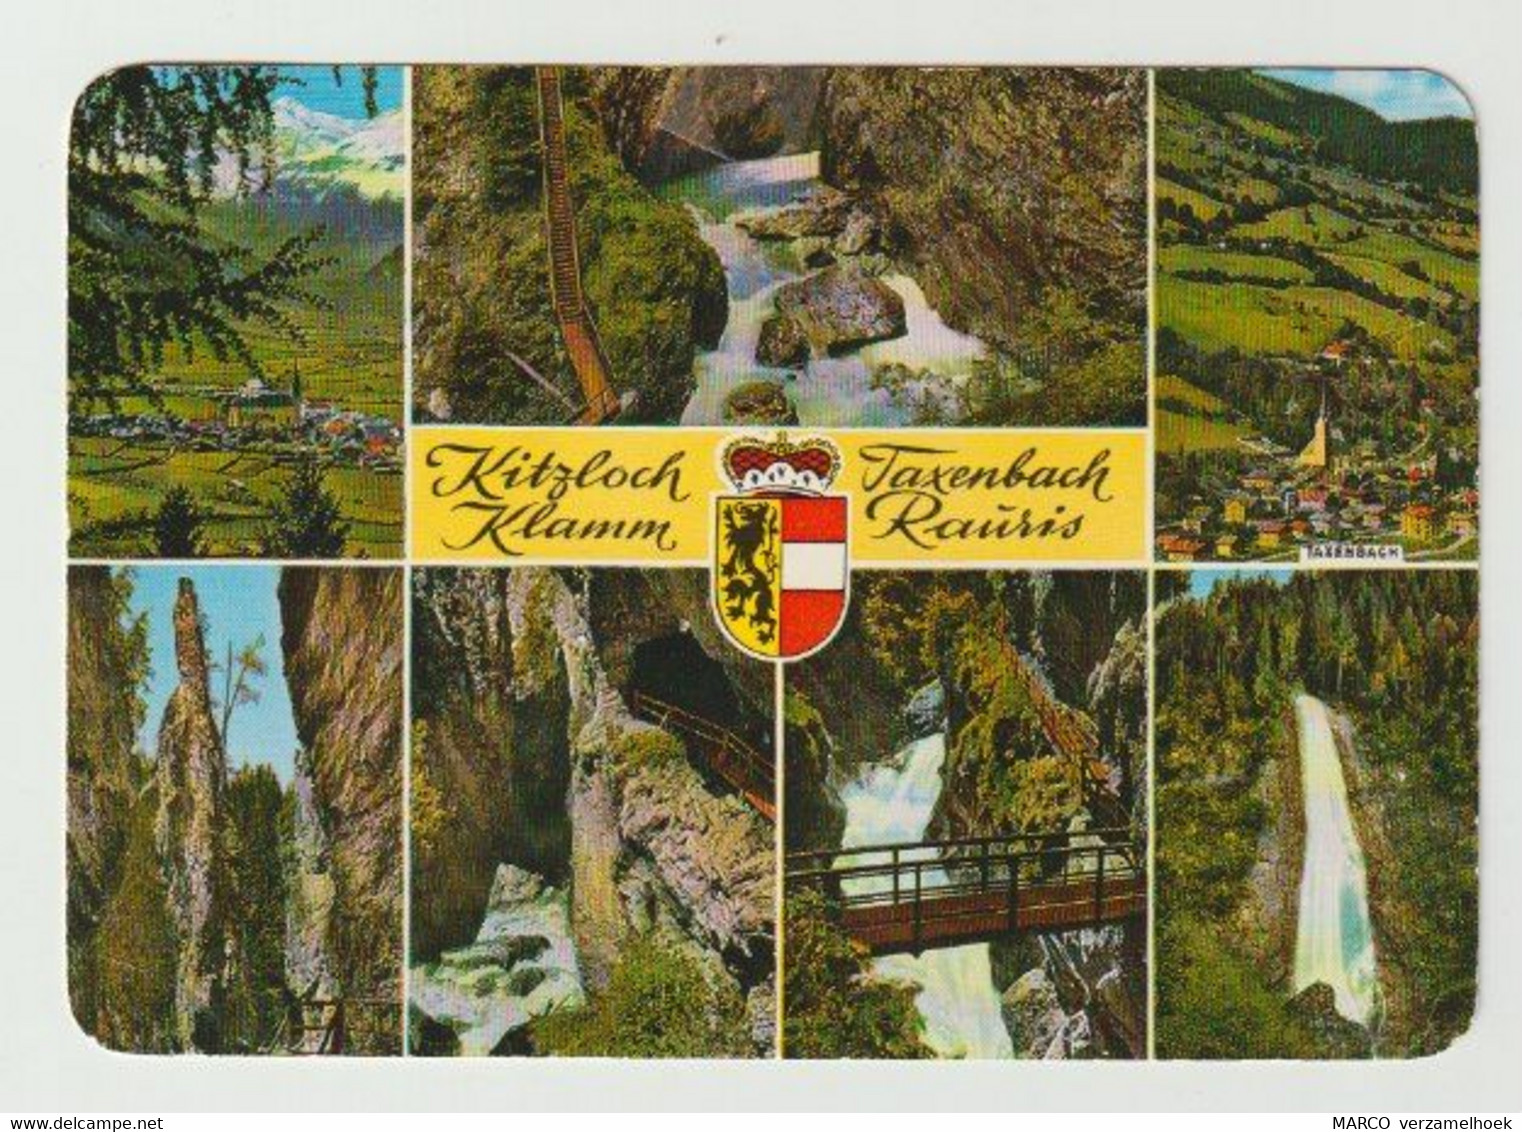 Ansichtkaart-postcard Kitzloch Klamm Taxenbach Rauris (A) - Rauris